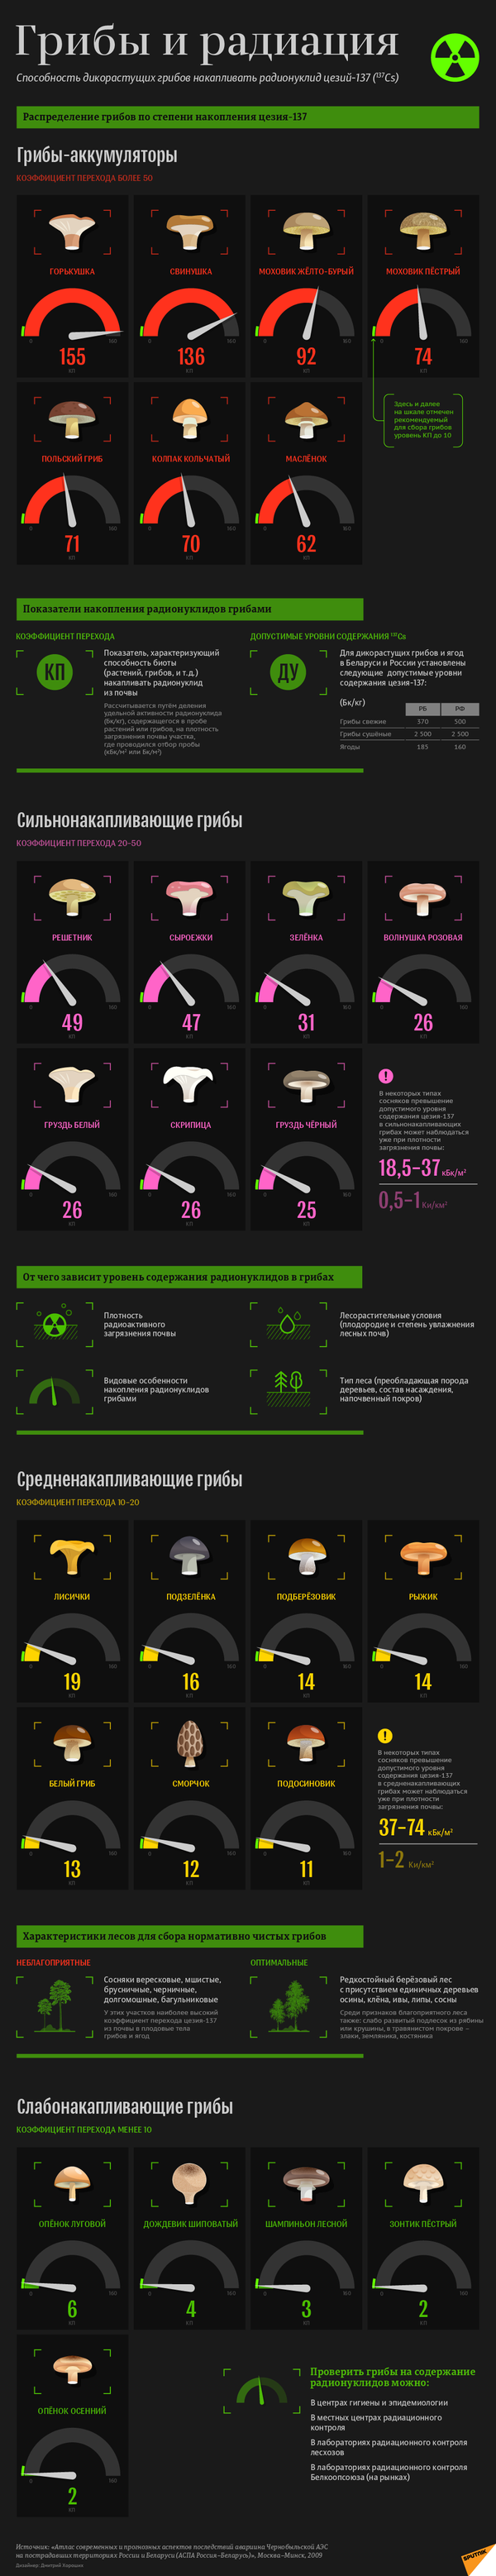 Грибы и радиация - инфографика на sputnik.by - Sputnik Беларусь